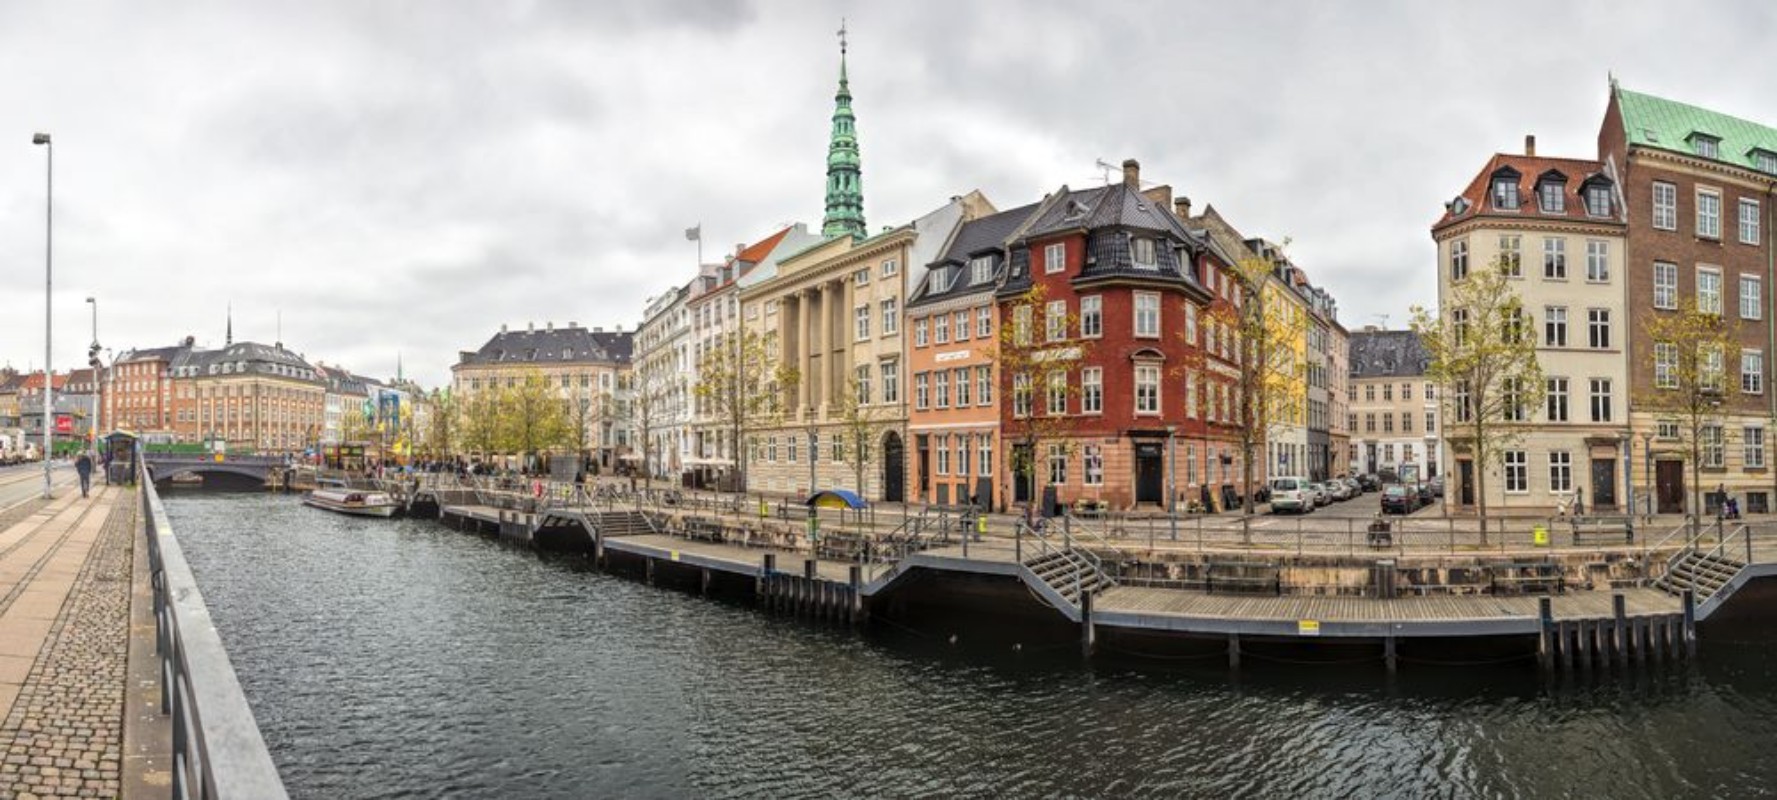 Afbeeldingen van Oude stad van Kopenhagen, Denemarken